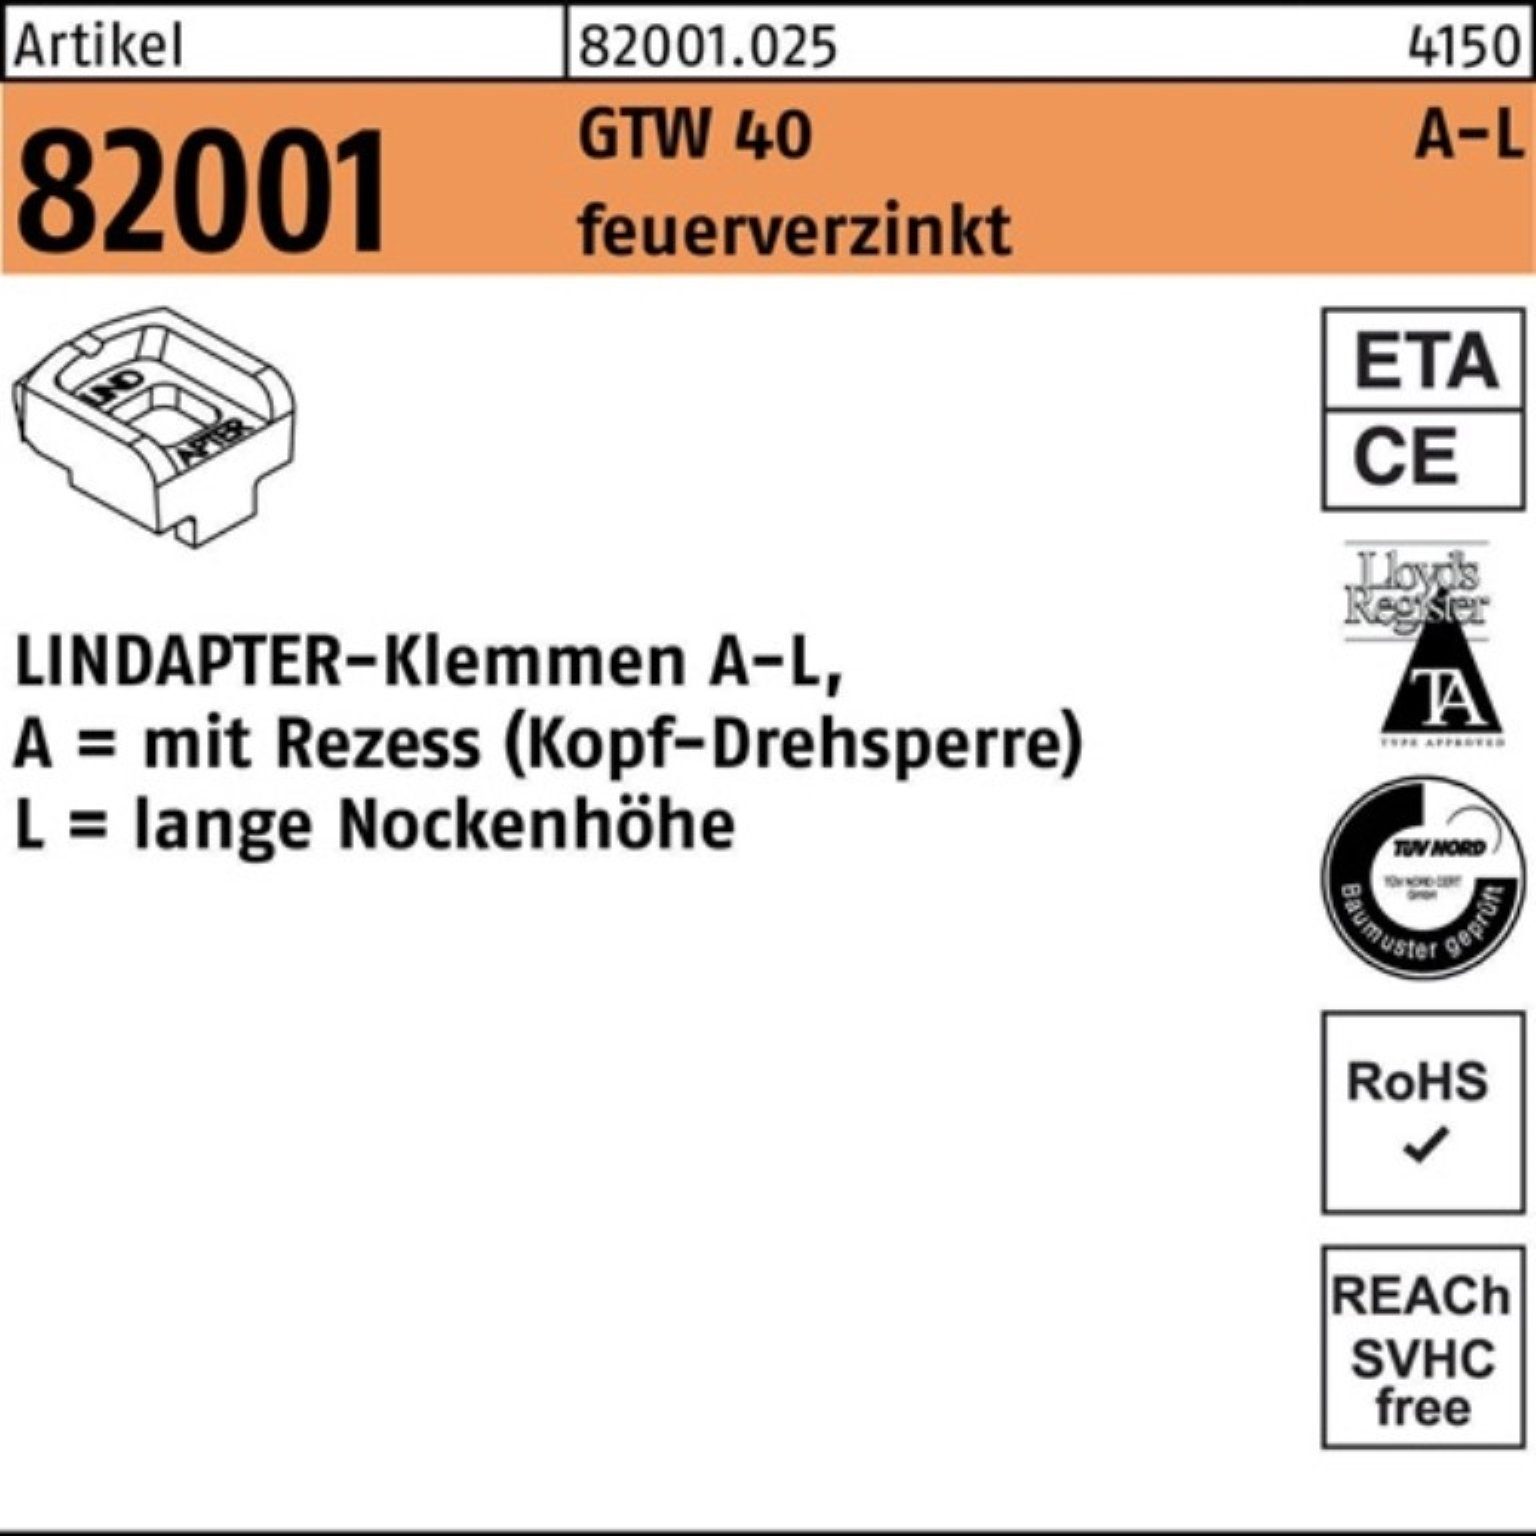 Pack Klemmen R feuerverz. LM 100er LINDA Stück Klemmen 1 40 20/12,5 Lindapter GTW 82001